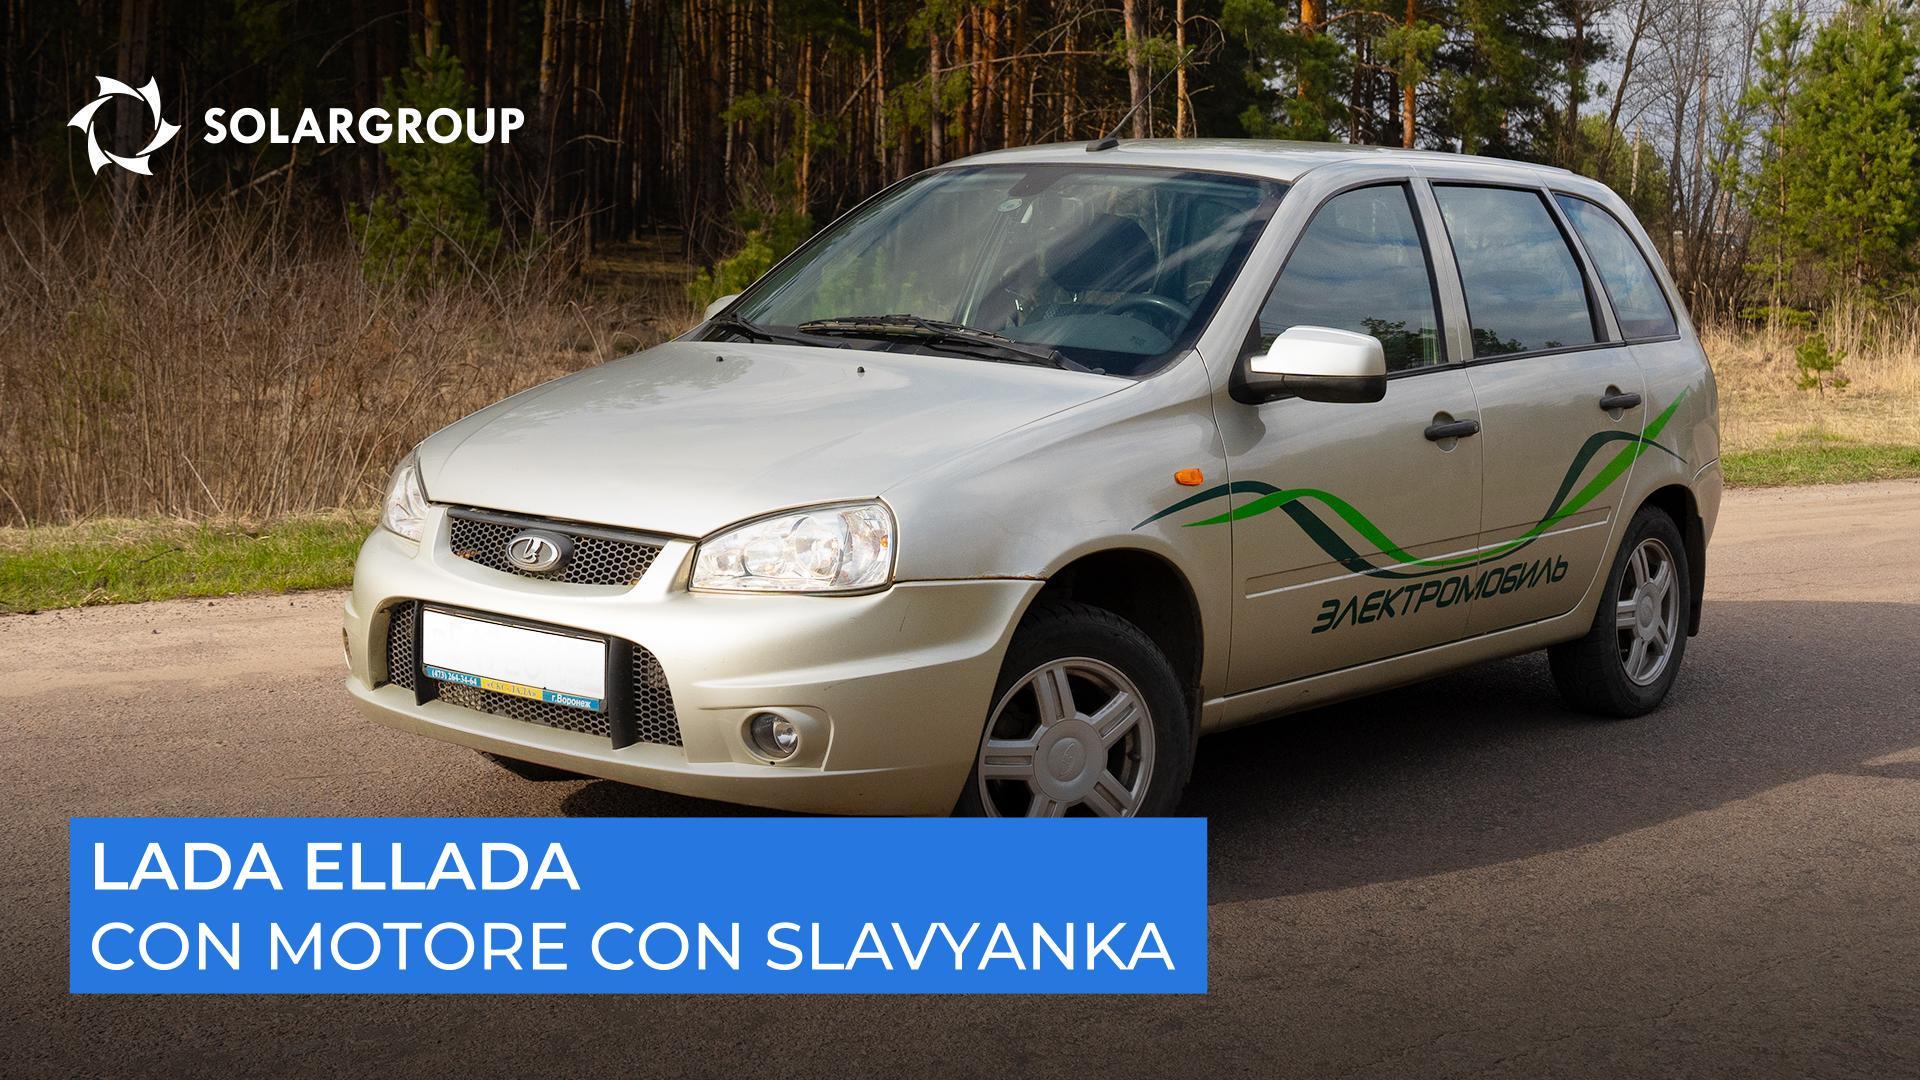 Veloce, silenziosa e resistente: cosa hanno dimostrato i test sull'auto elettrica con Slavyanka?